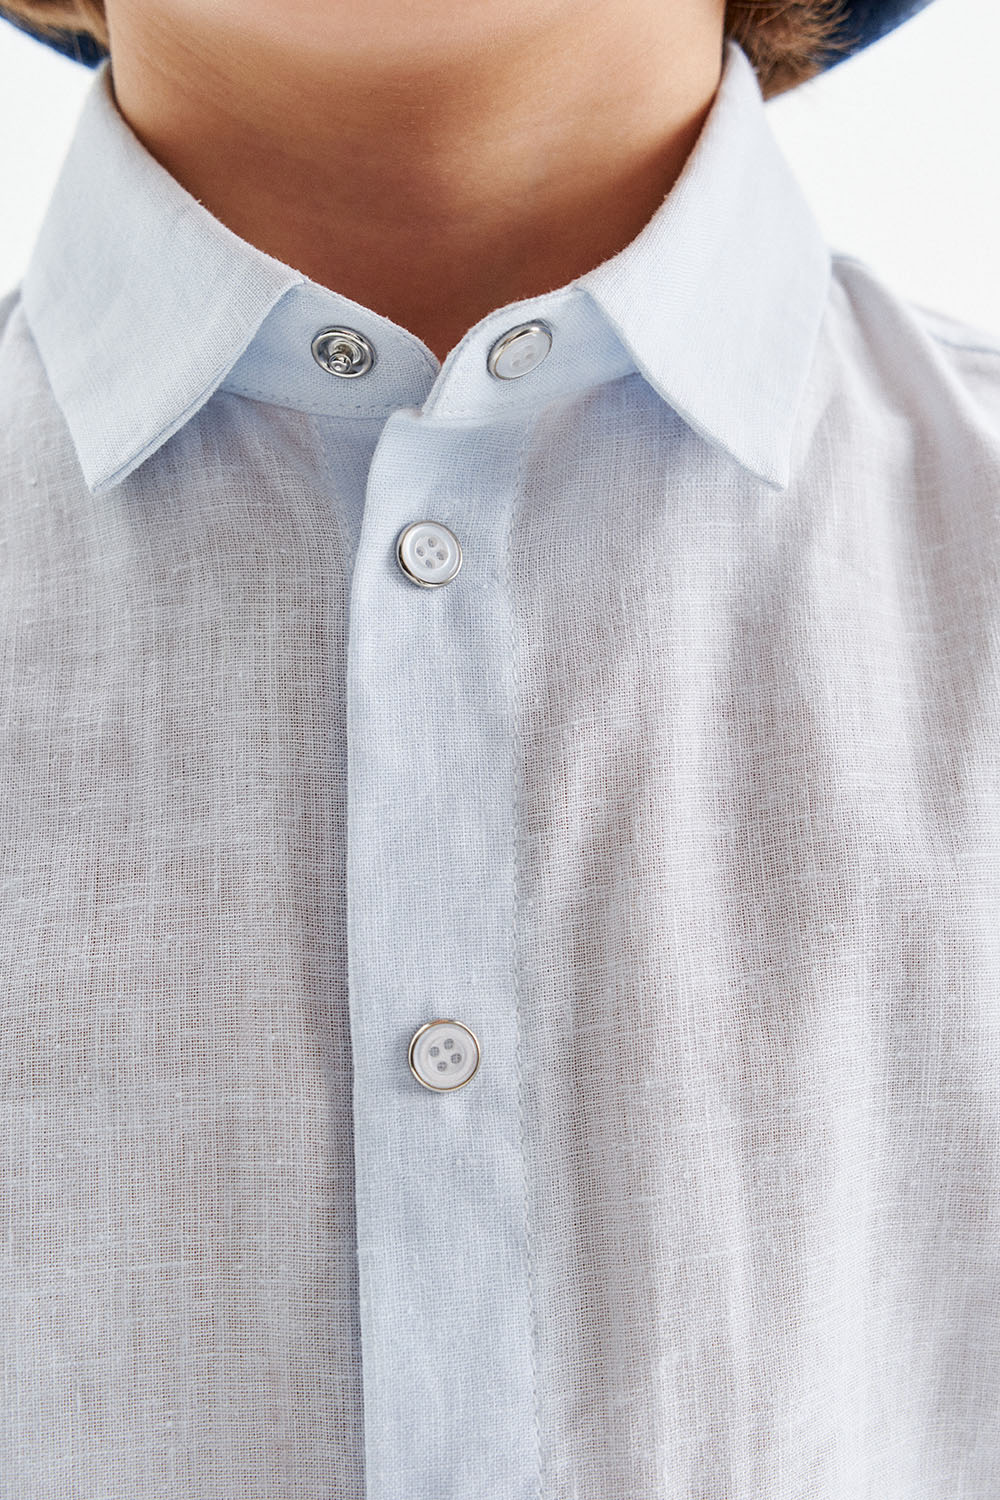 Льняная рубашка на кнопках (SNFSB-429-14604-385) Silver spoon